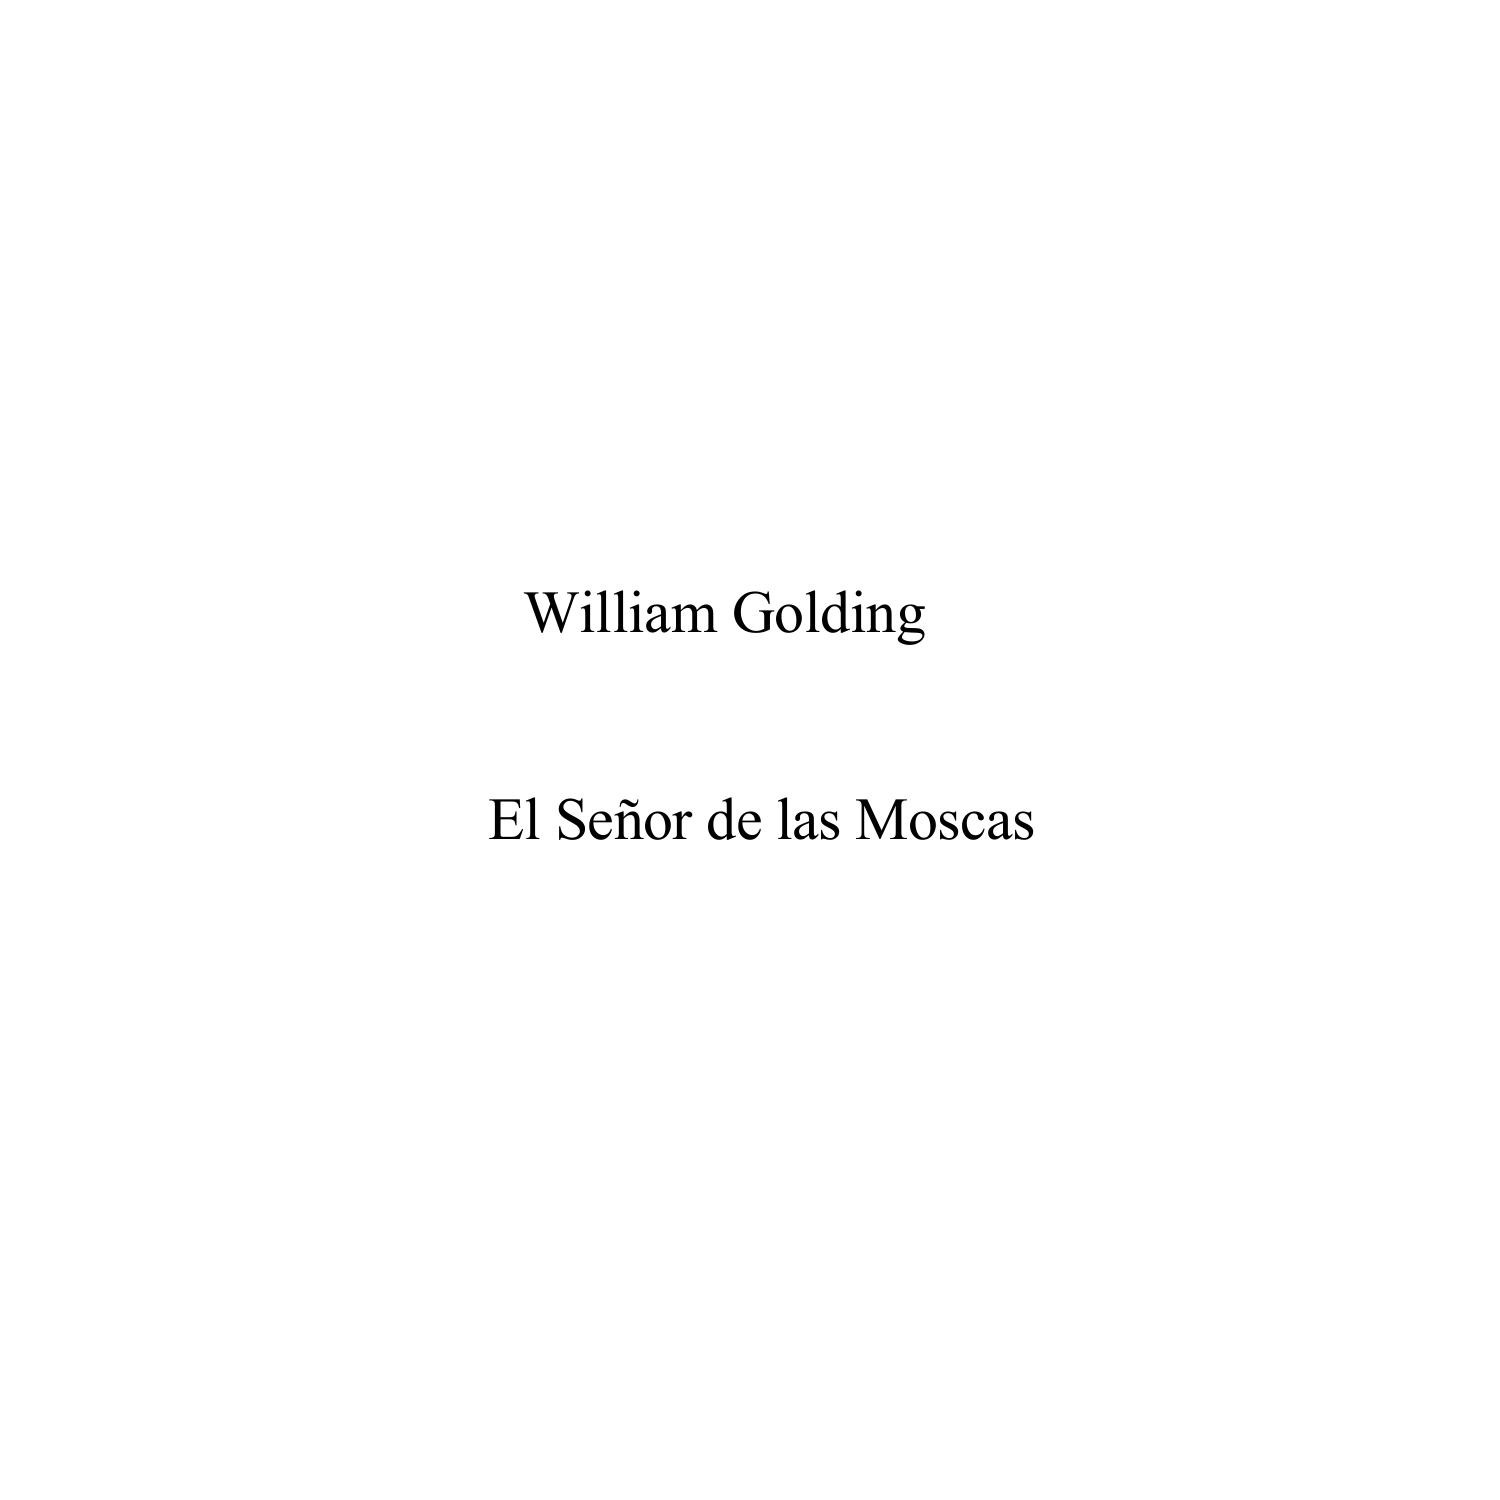 Autenticación Melancólico Increíble William Golding - El Señor de las moscas. Biblioteca Tepeyac. Descargar.pdf  | DocDroid